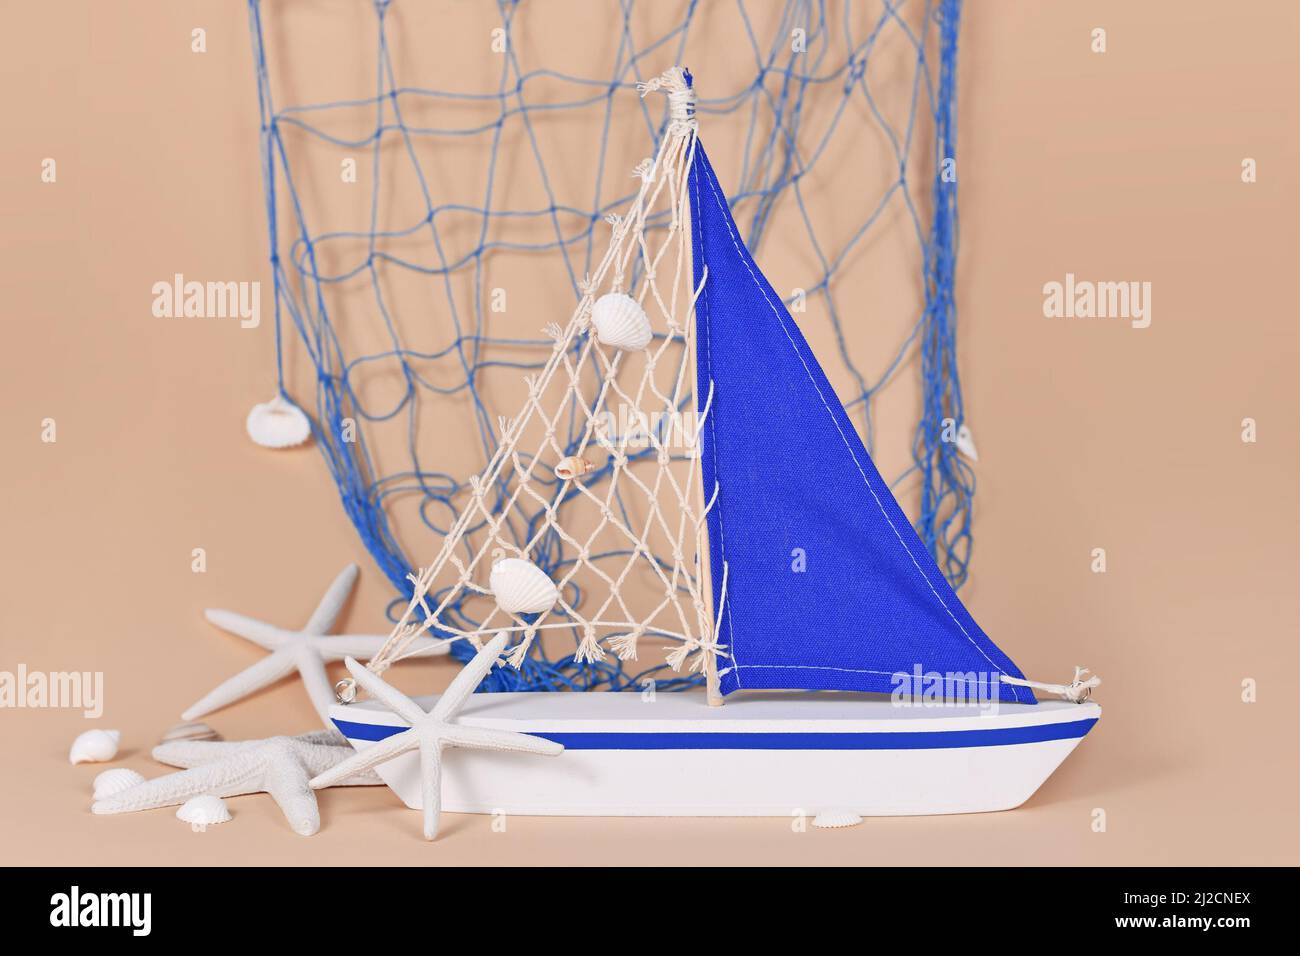 Petite décoration de bateau à voile avec étoiles de mer et filet de pêche Banque D'Images